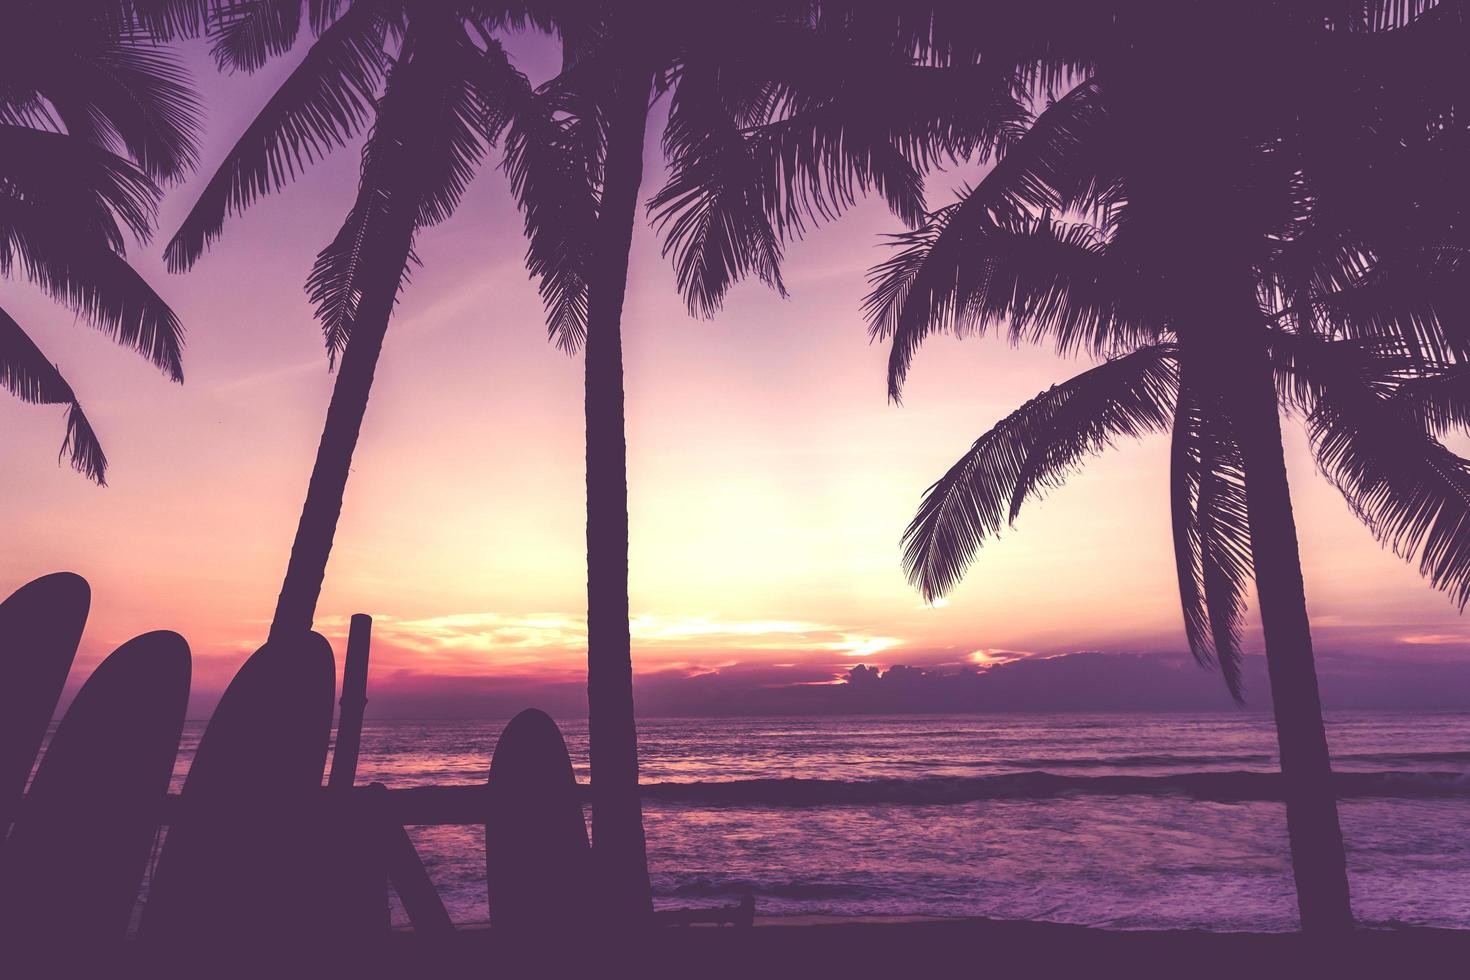 många surfbrädor bredvid kokospalmer på sommarstranden med mörk himmel foto